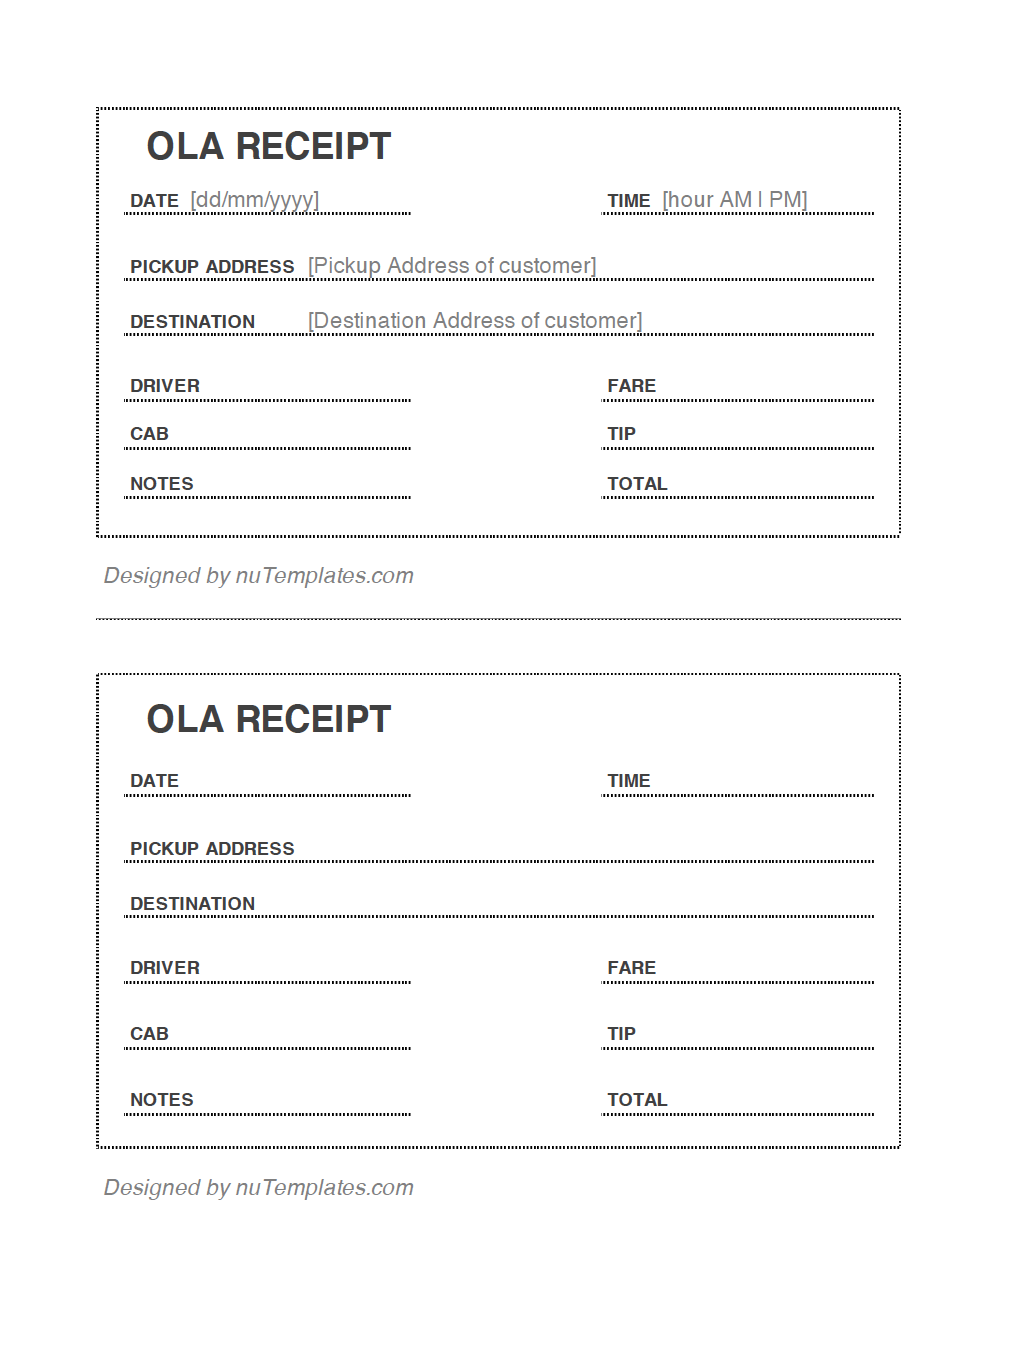 ola-receipt-template-ola-receipts-nutemplates